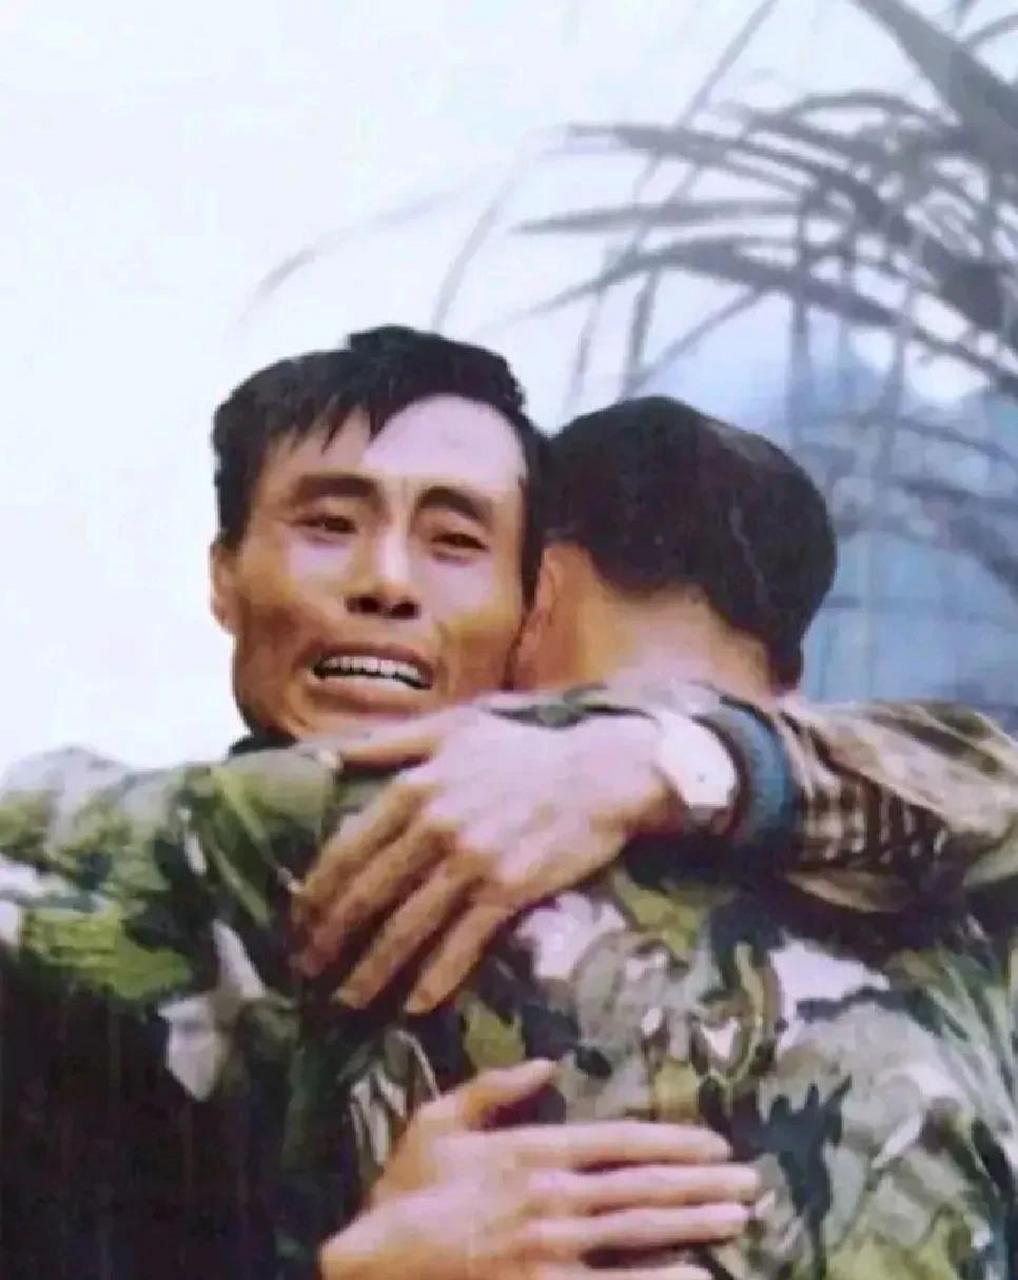 这张两个军人拥抱的照片拍摄于1985年,云南前线老山战斗的战场抓拍